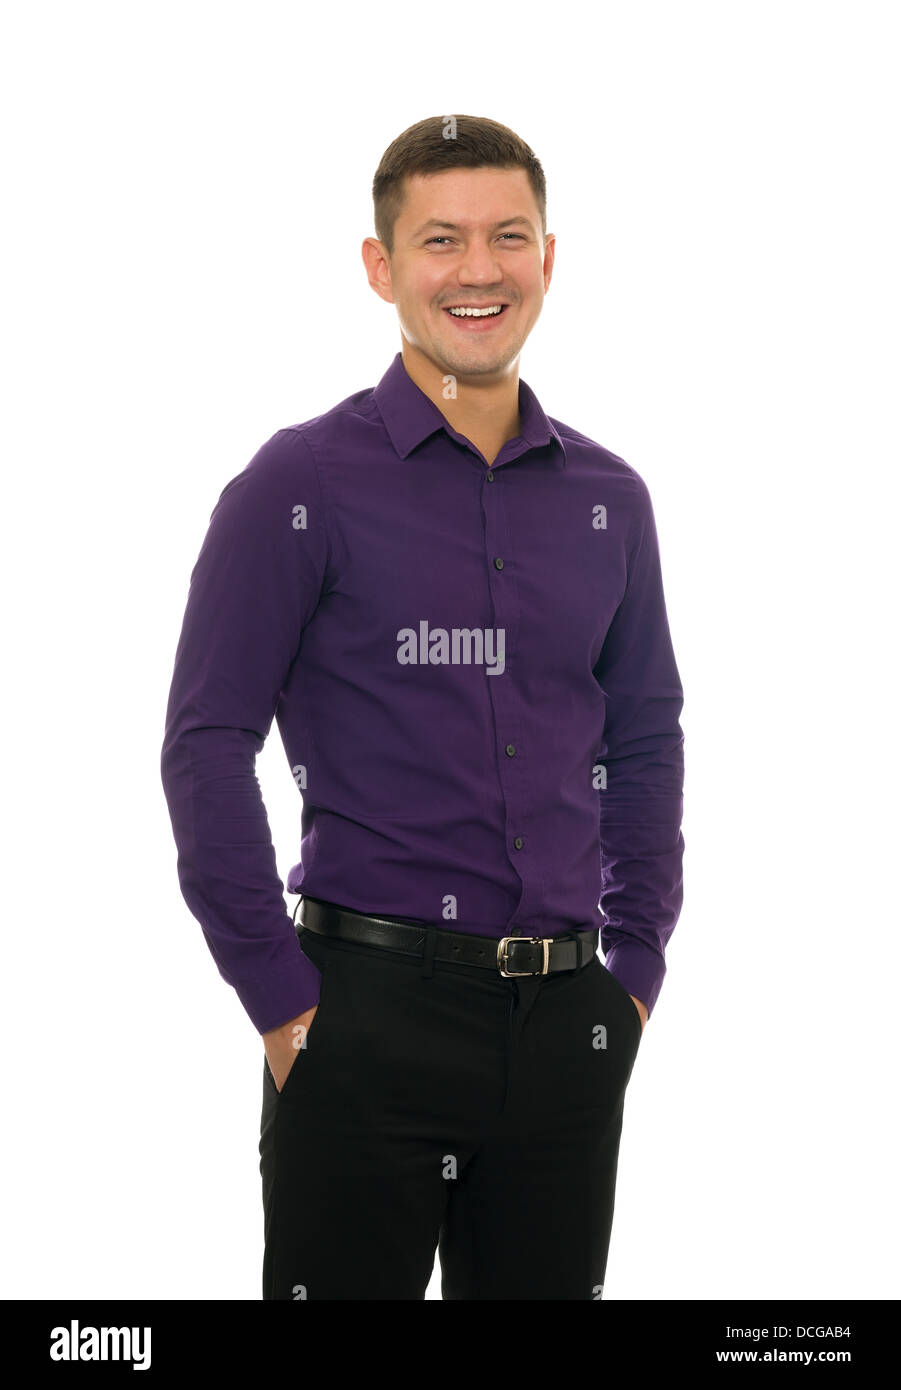 Camisa violeta e imágenes de alta resolución - Alamy